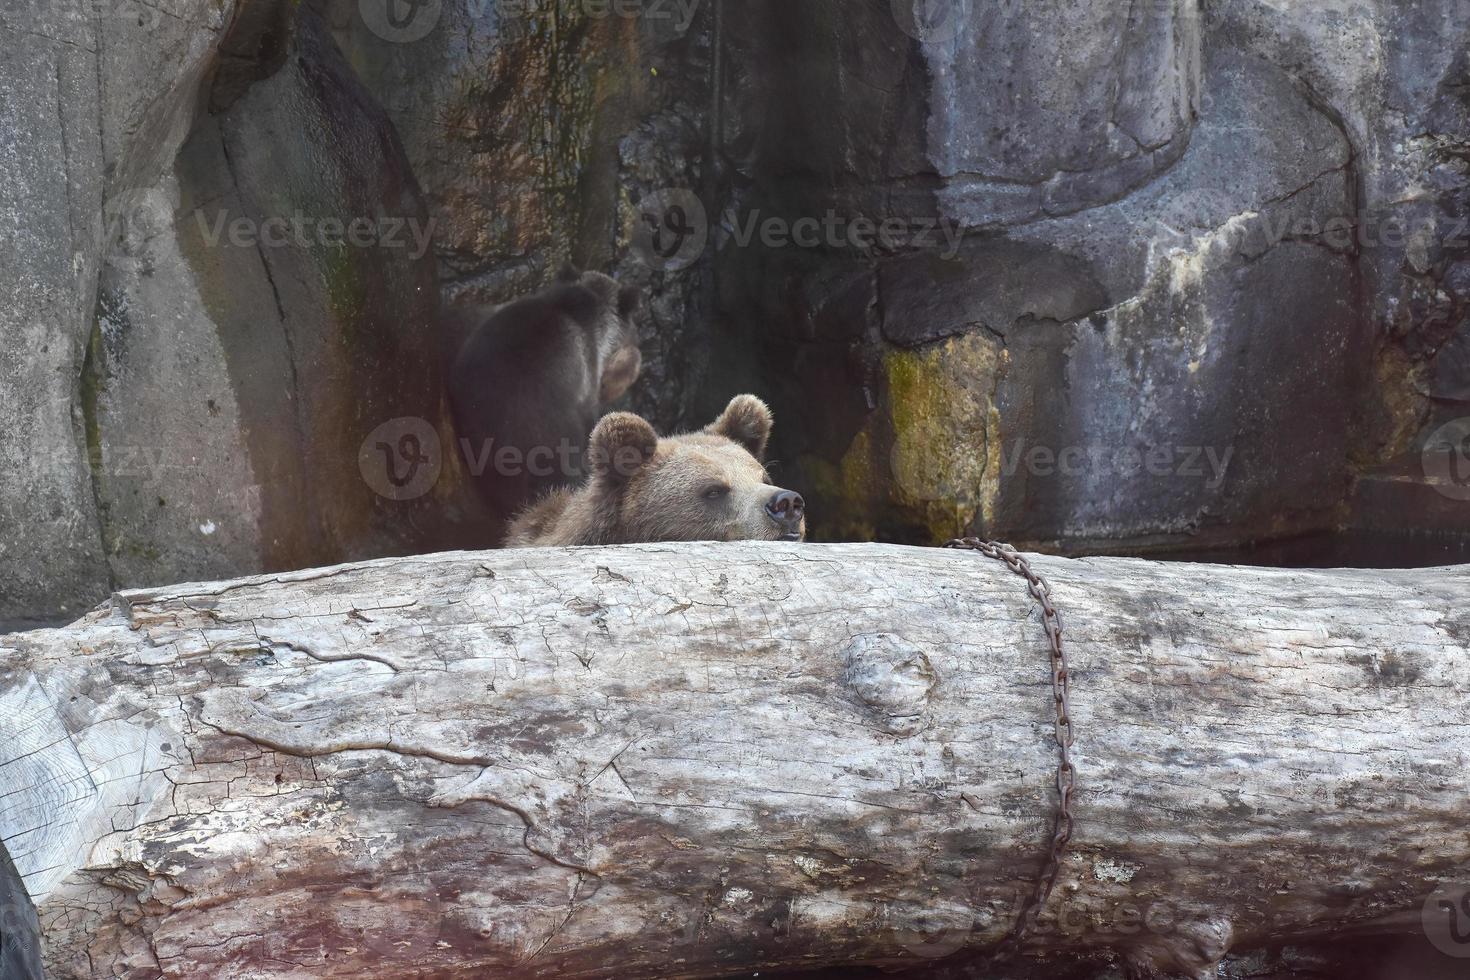 ours bruns reposant sur un rondin de bois. en arrière-plan il y a des rochers, une réserve naturelle pour les ours. photo